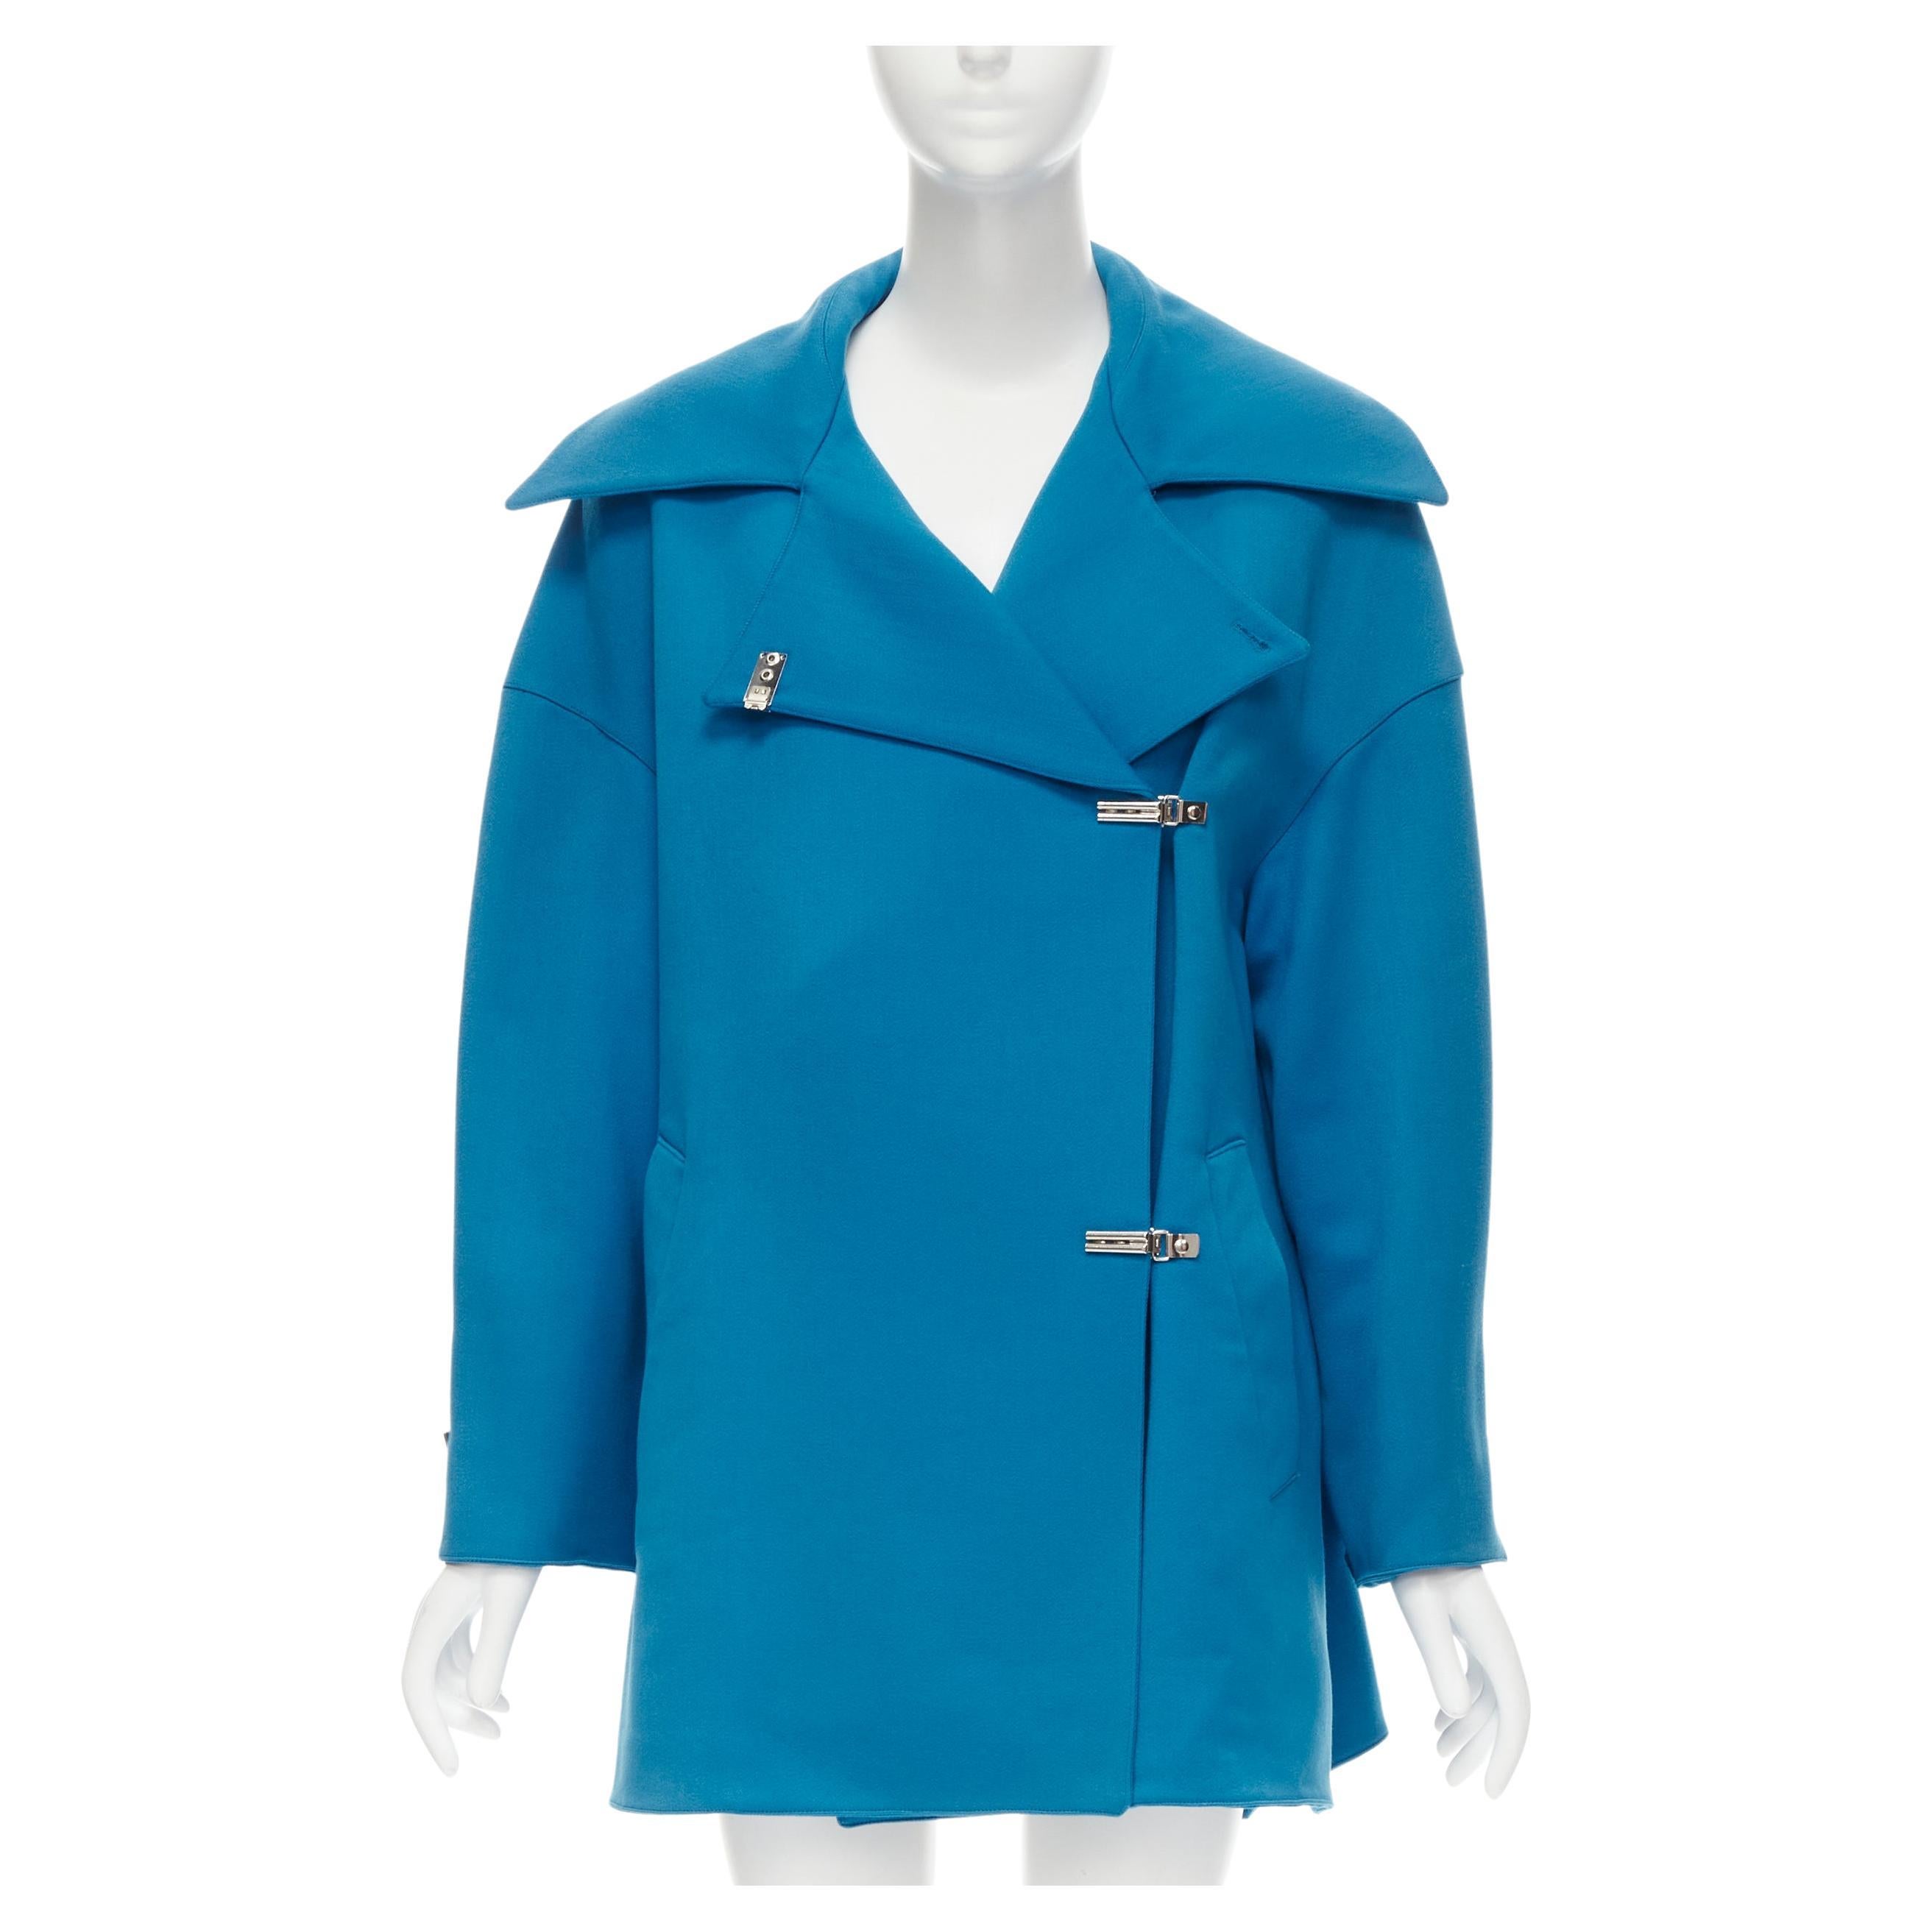 CLAUDE MONTANA 1991 Manteau oversize en laine bleue vintage avec fermoir en métal IT42 M